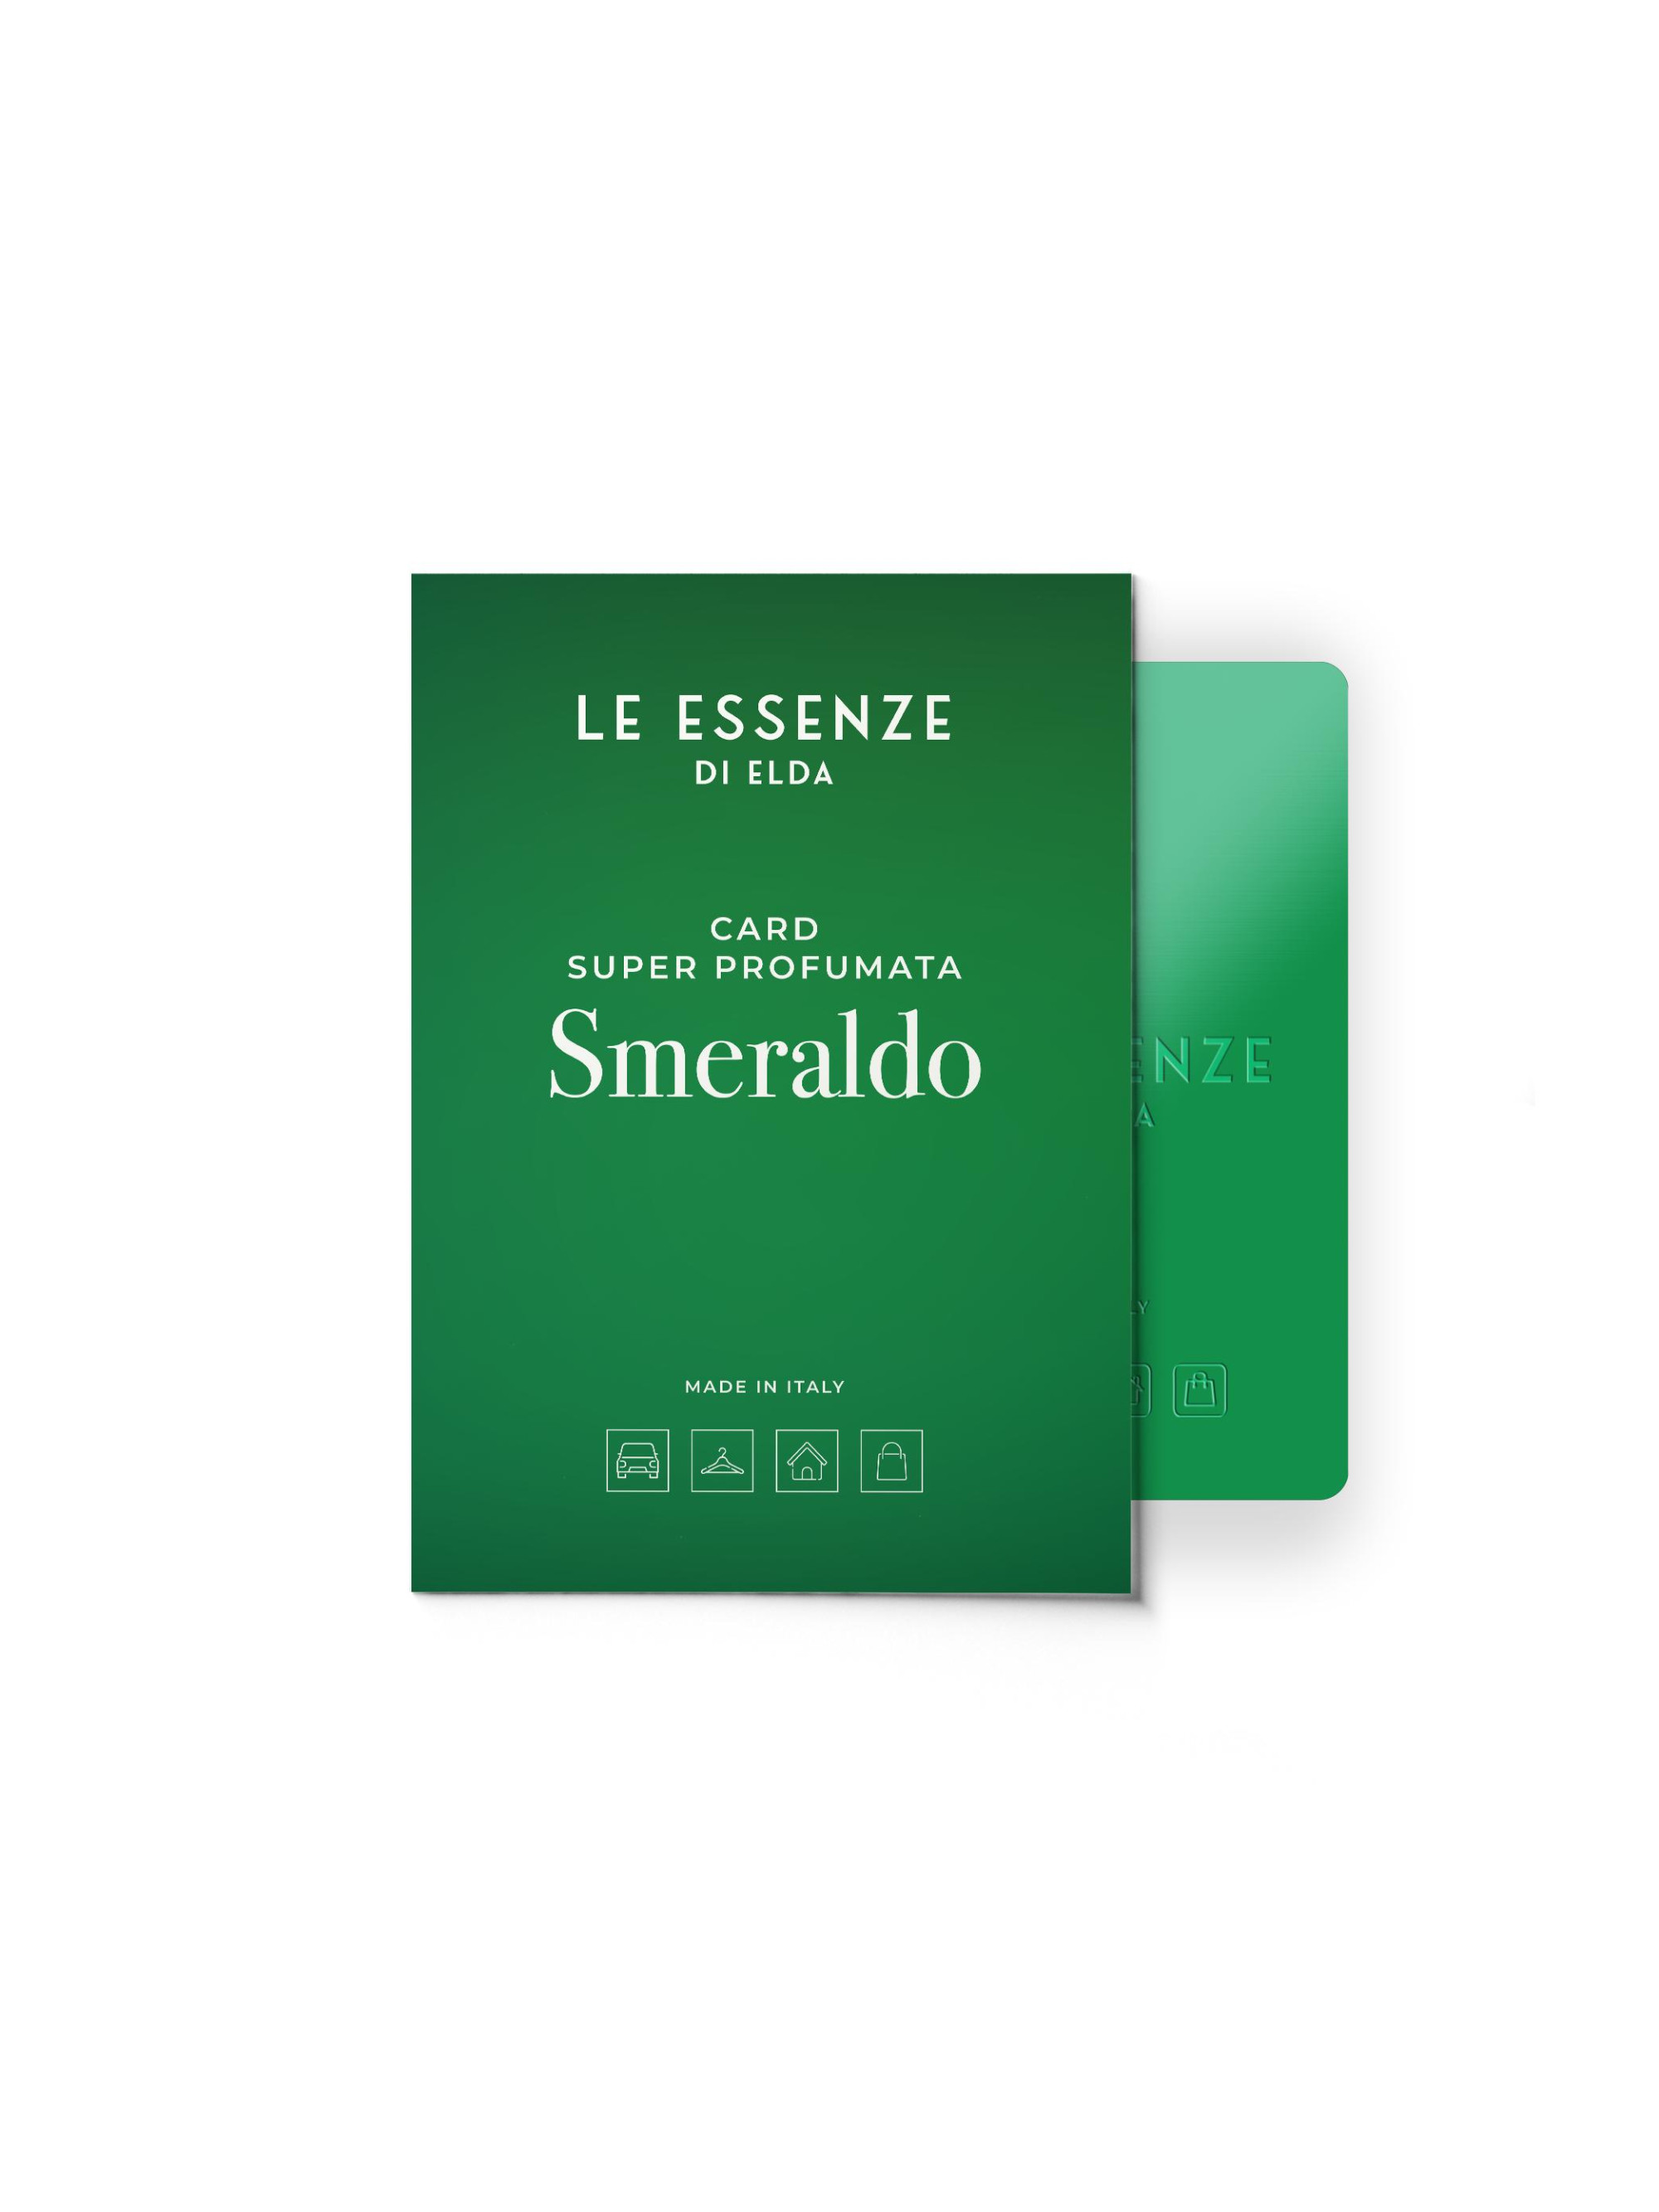 Super carte parfumée Smeraldo